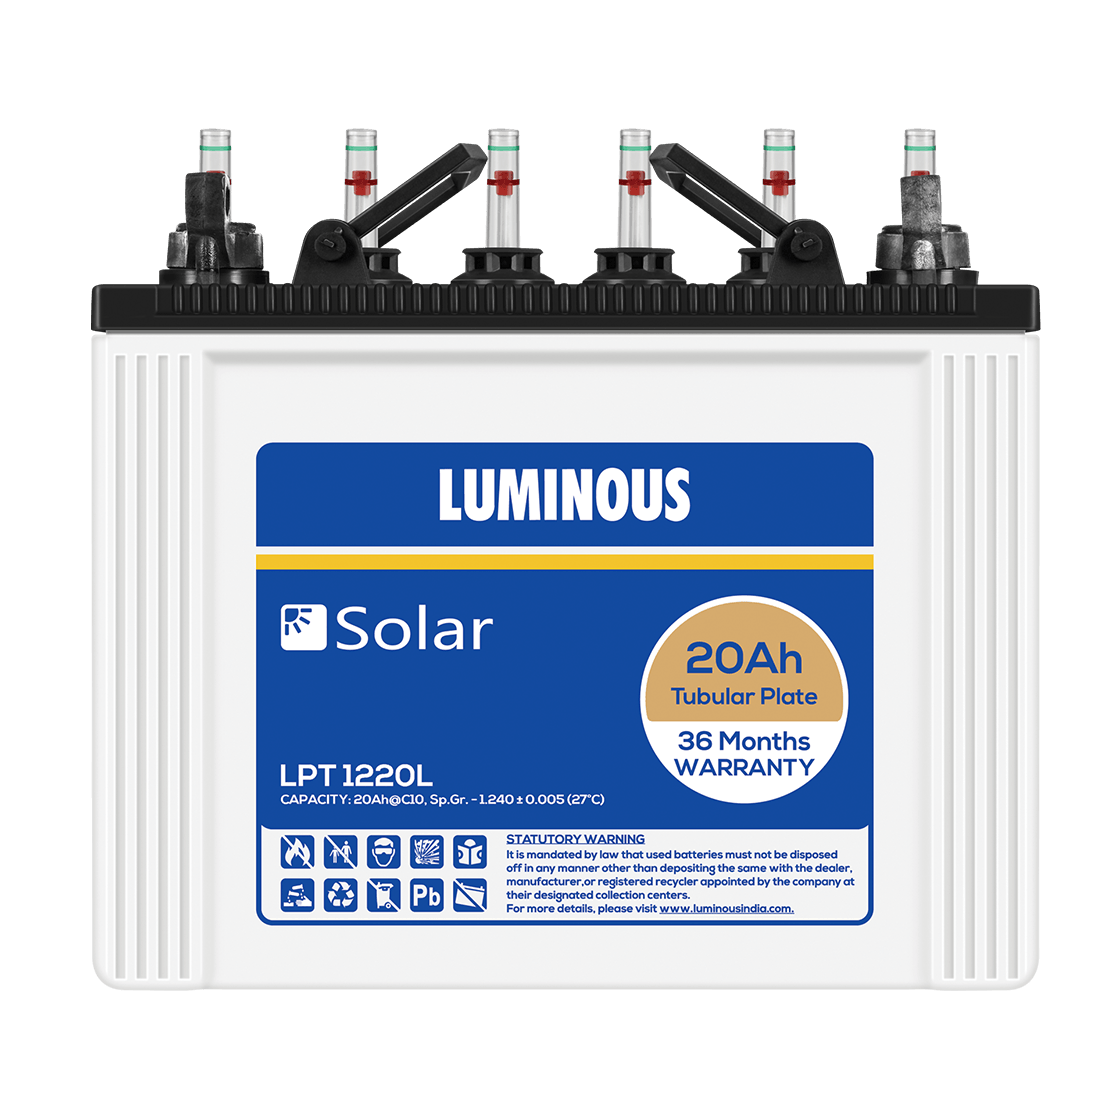 Luminous Battery Logo - Buy LPT 1220L Solar Batteries Online - Luminous India